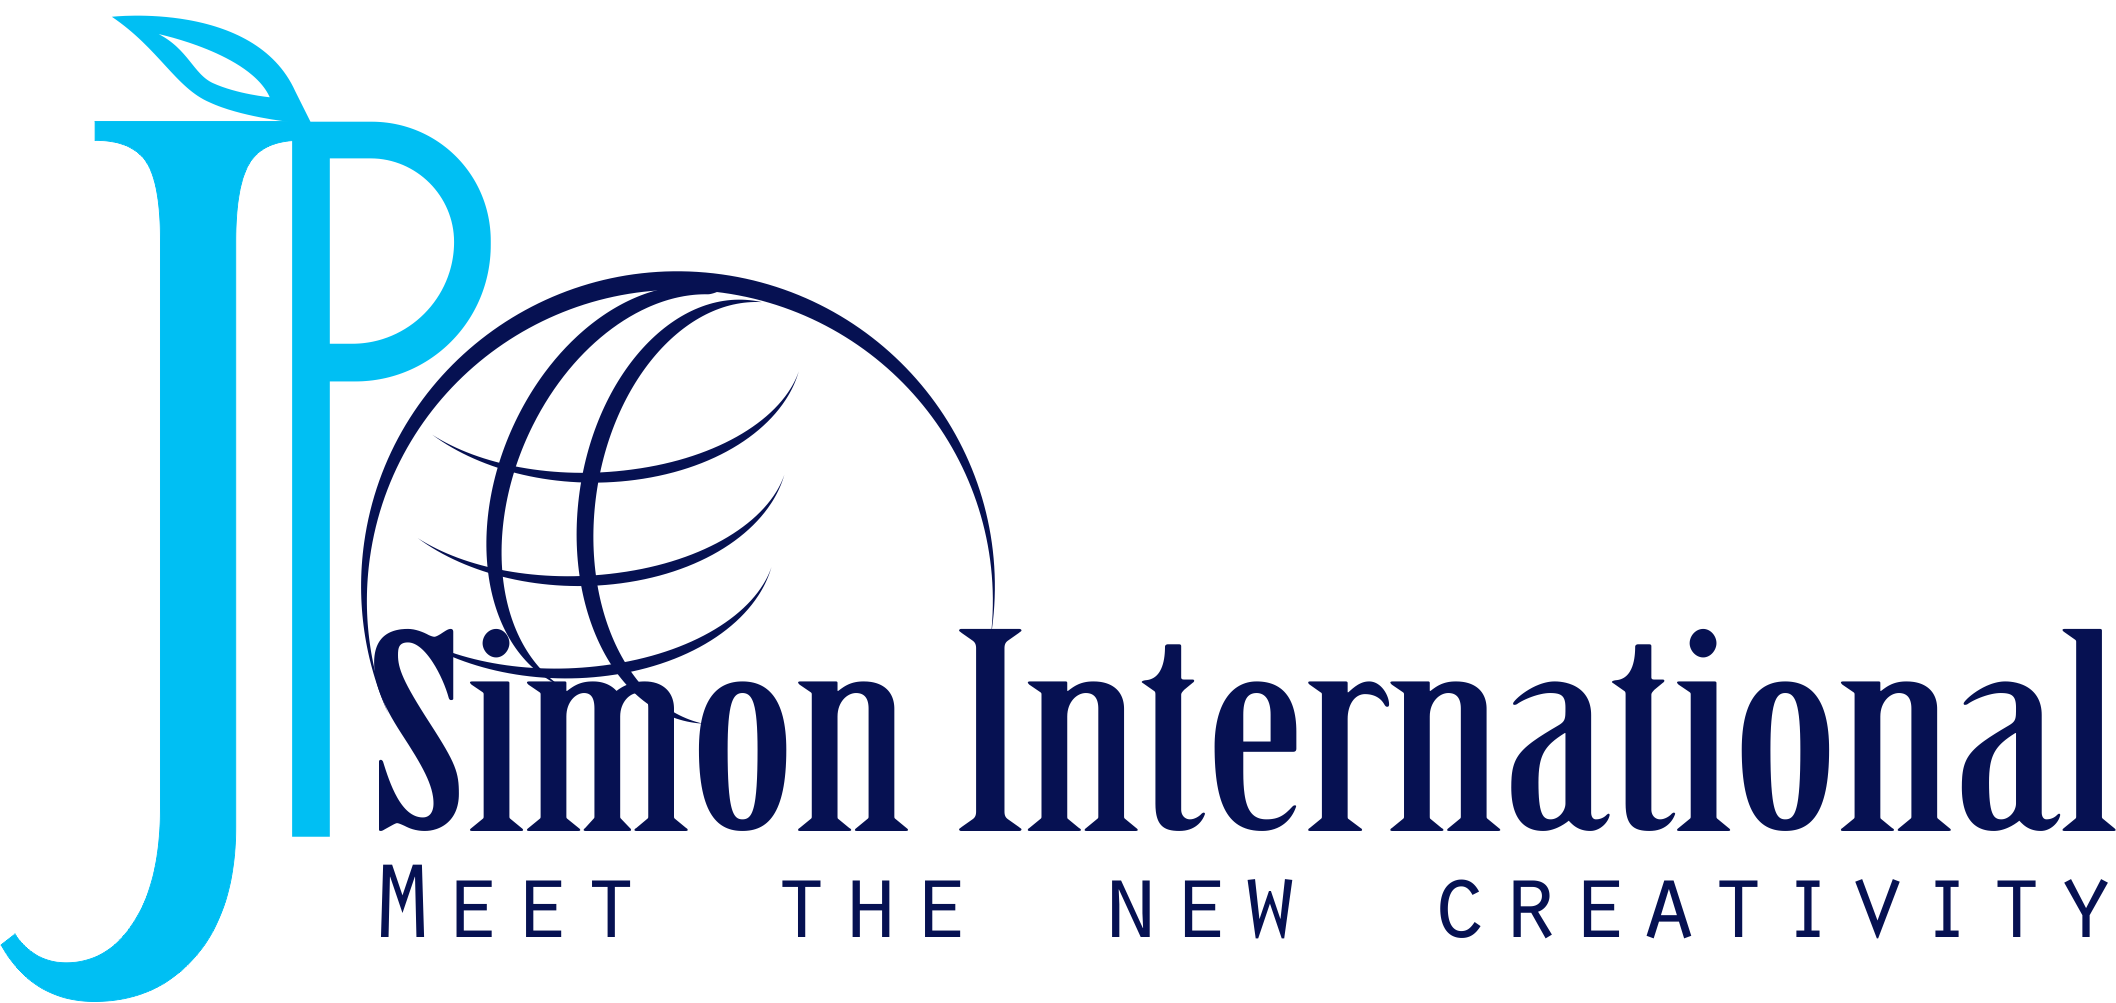 JP Simon Logo